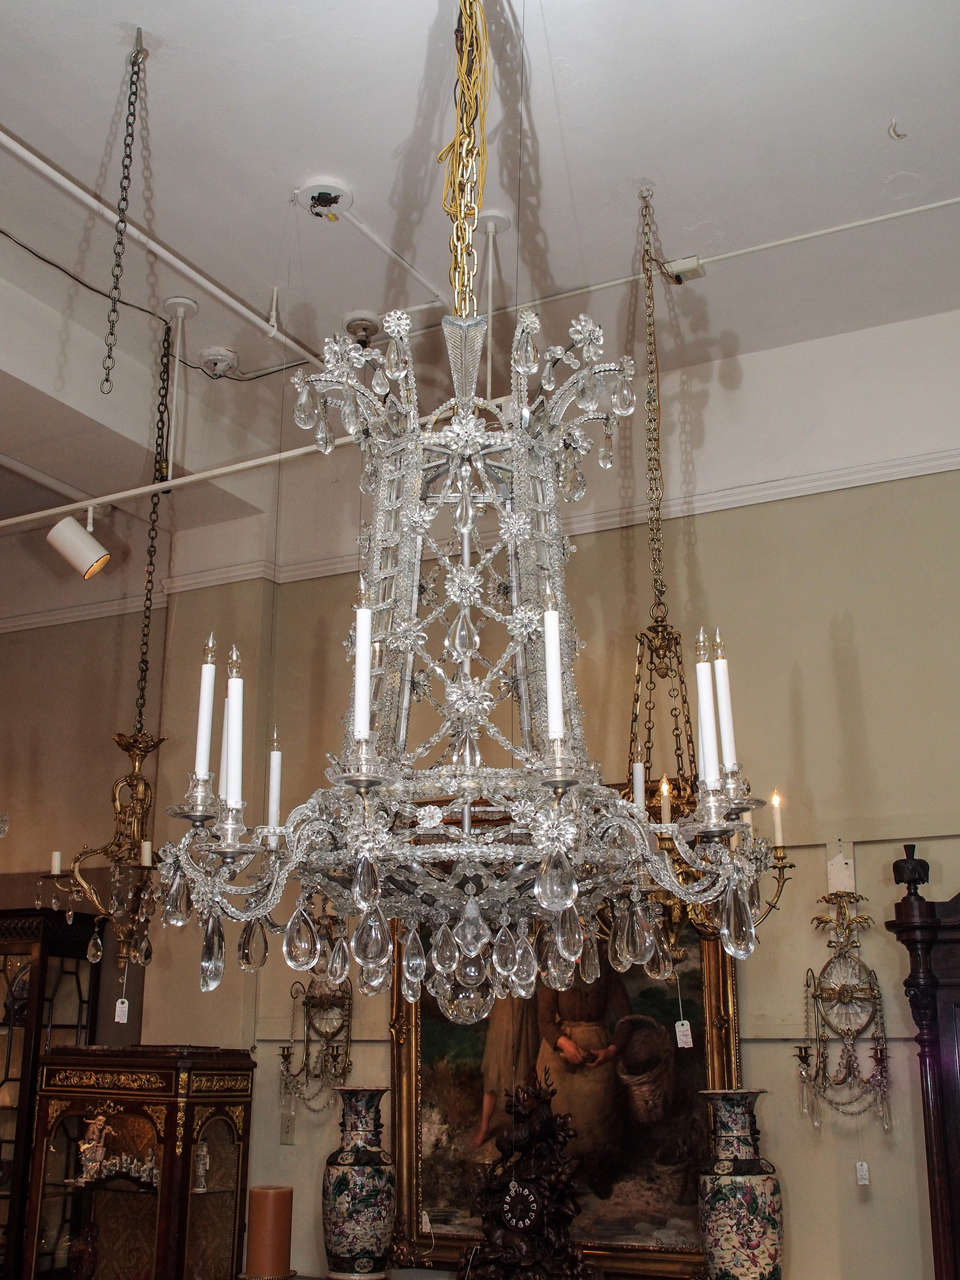 Antique French Baguès crystal original design chandelier. From the Mill Road Farm estate of Albert Lasker, Lake Forest, IL. David Adler, architect; Frances Elkins, decorator.